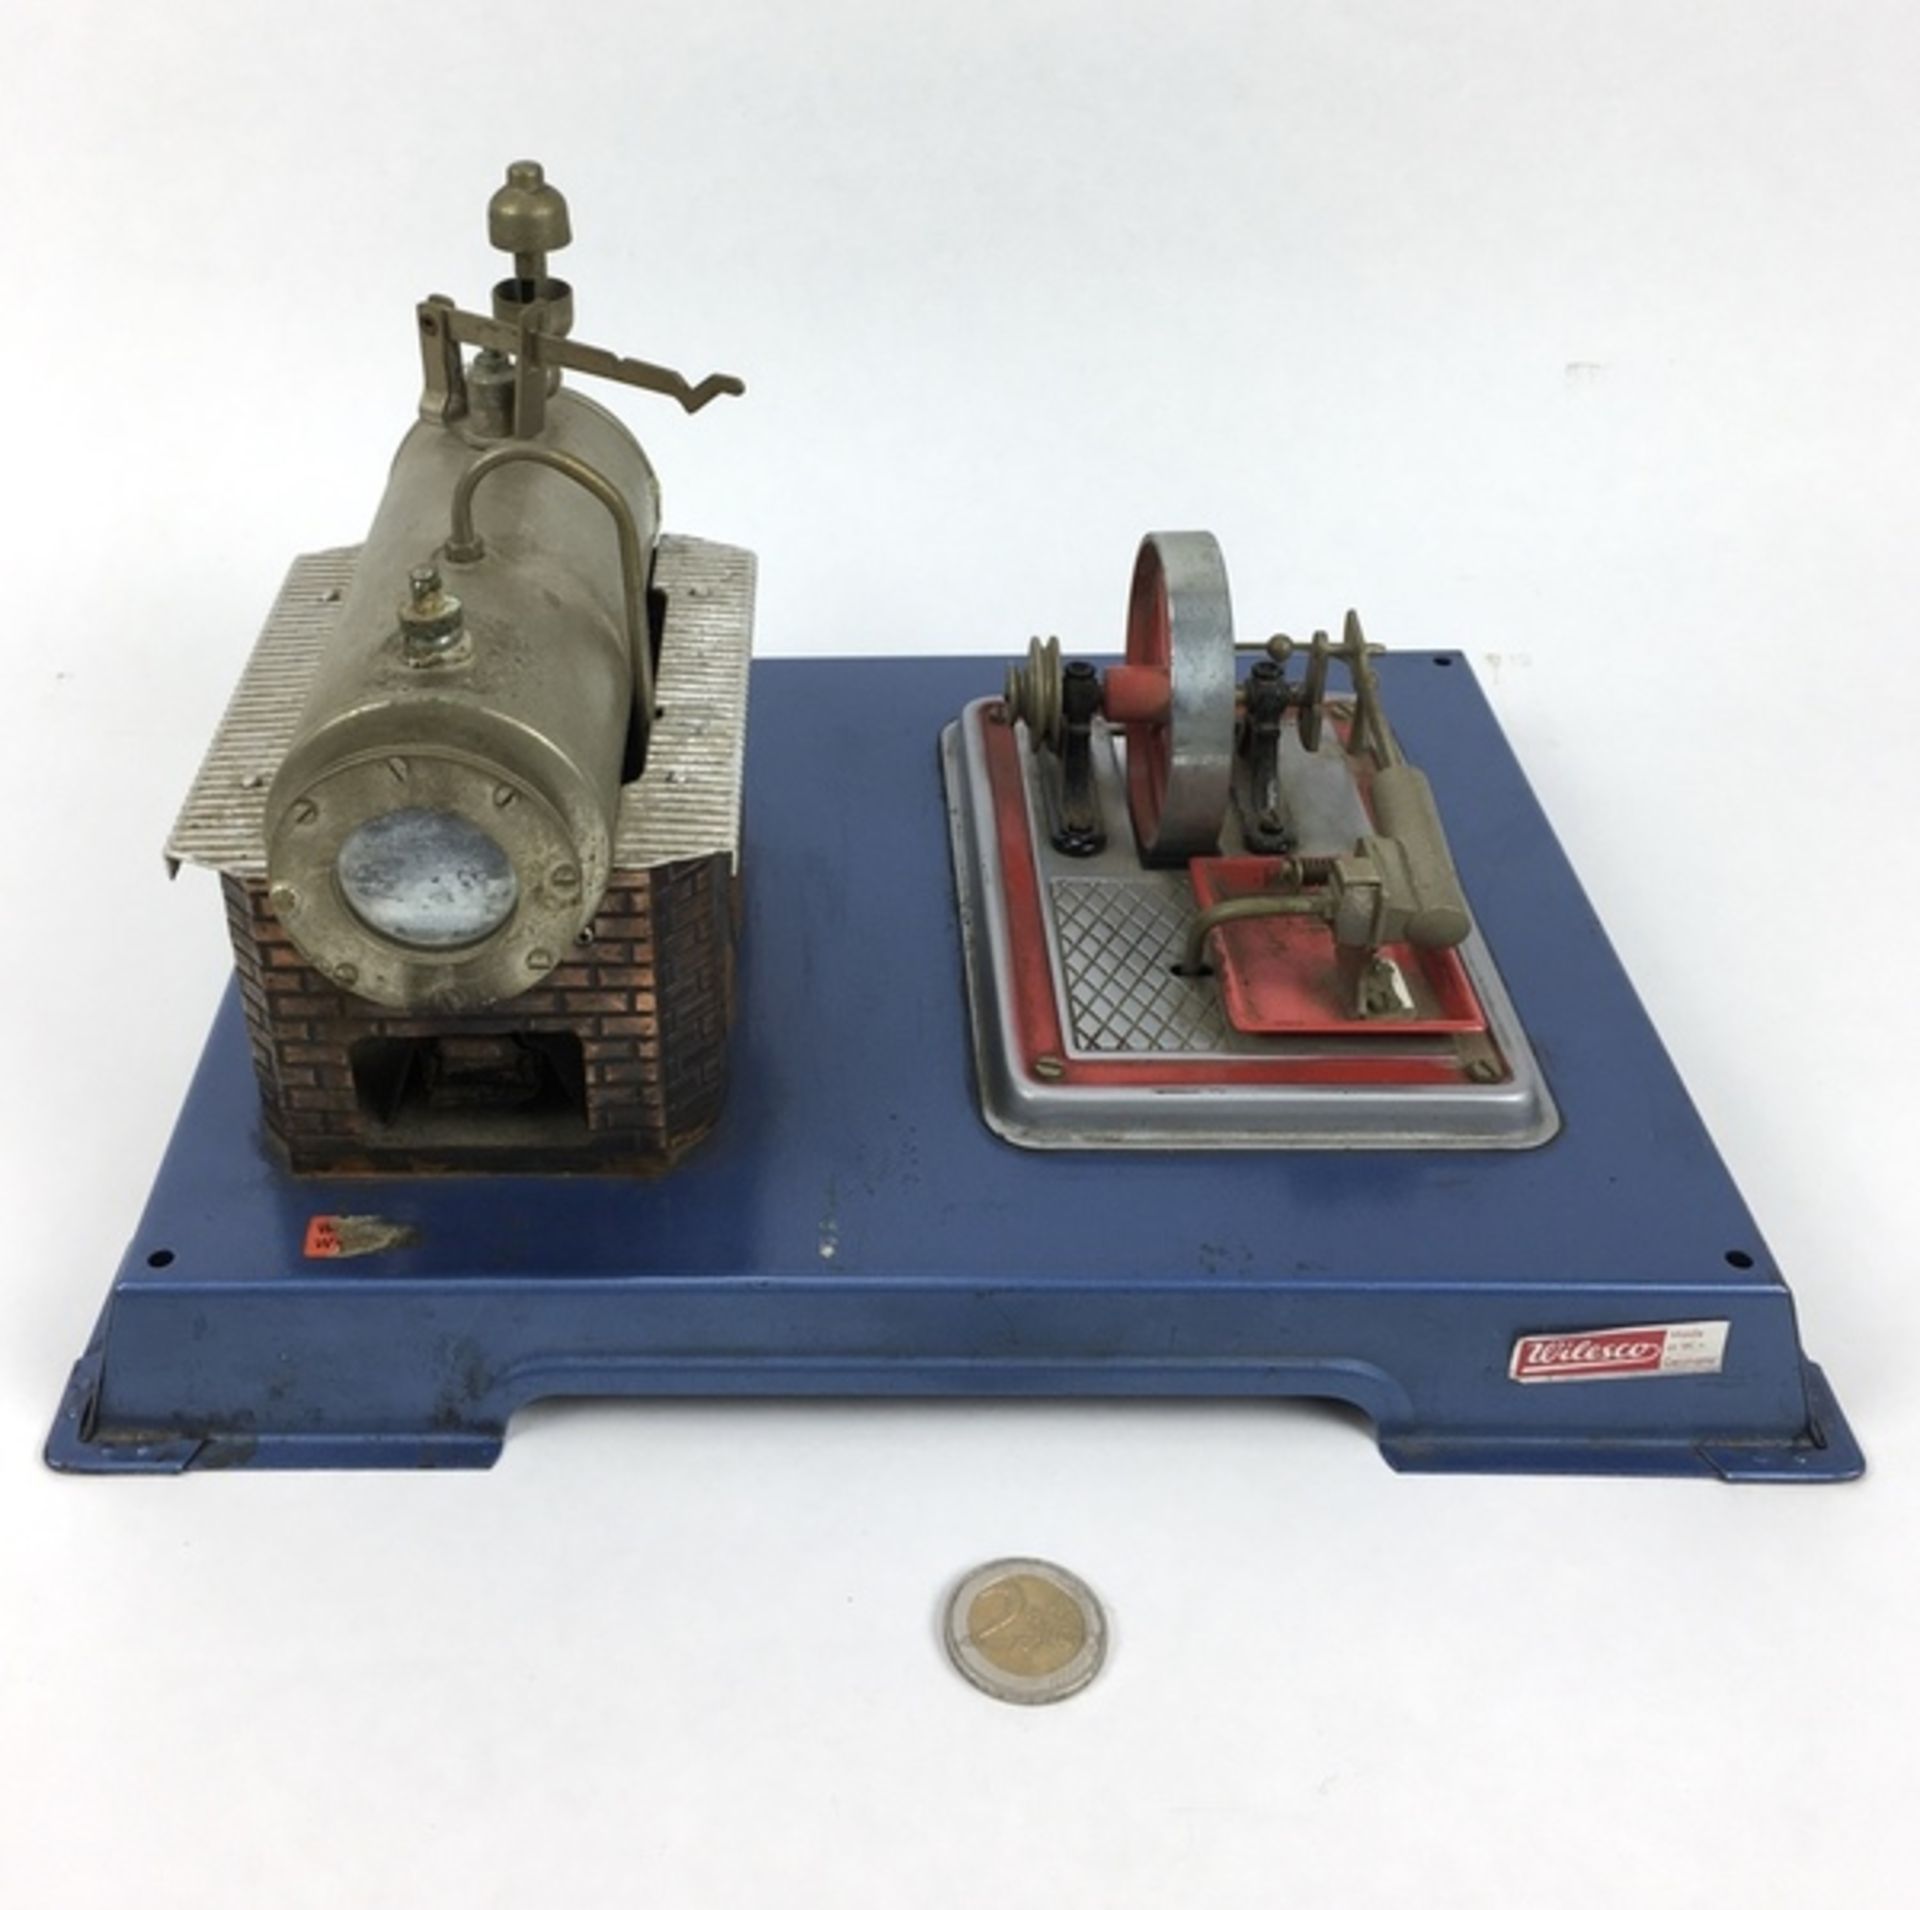 (Speelgoed) Stoommachine WilescoWilesco stoommachine, tweede helft 20e eeuw. Conditie: Incomple - Image 2 of 6